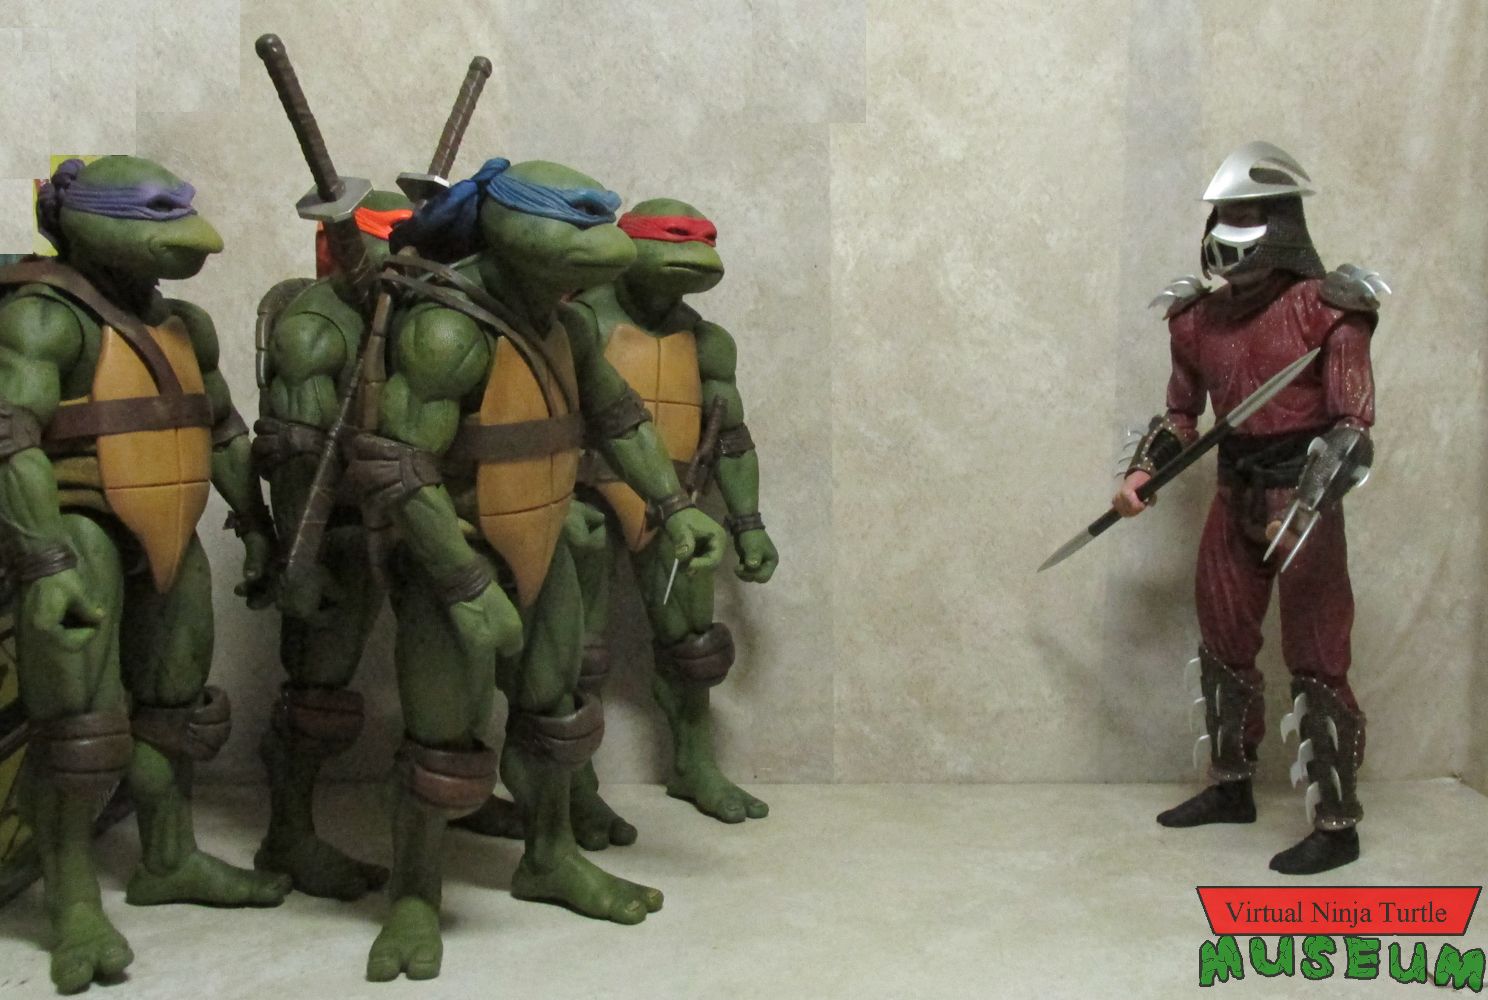 Shredder vs Turtles